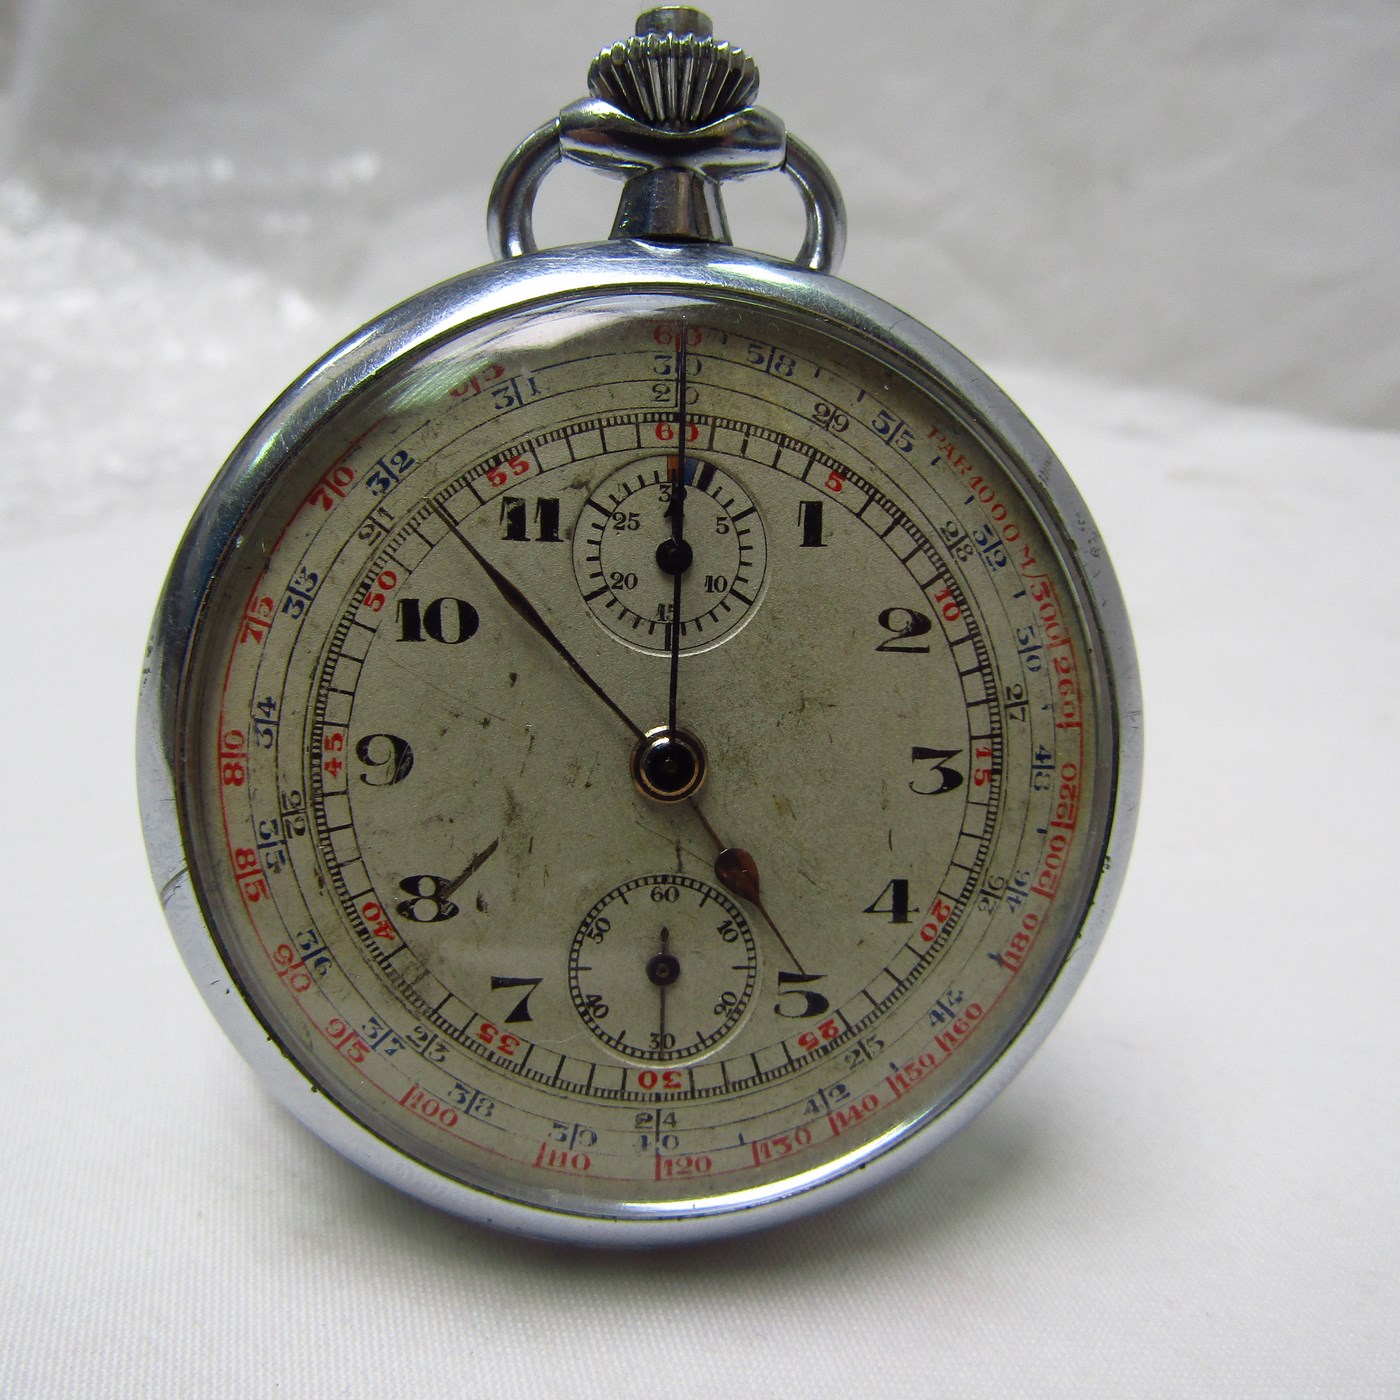 Reloj-Cronómetro Suizo, Lepine y remontoir. Suiza, ca. 1920.